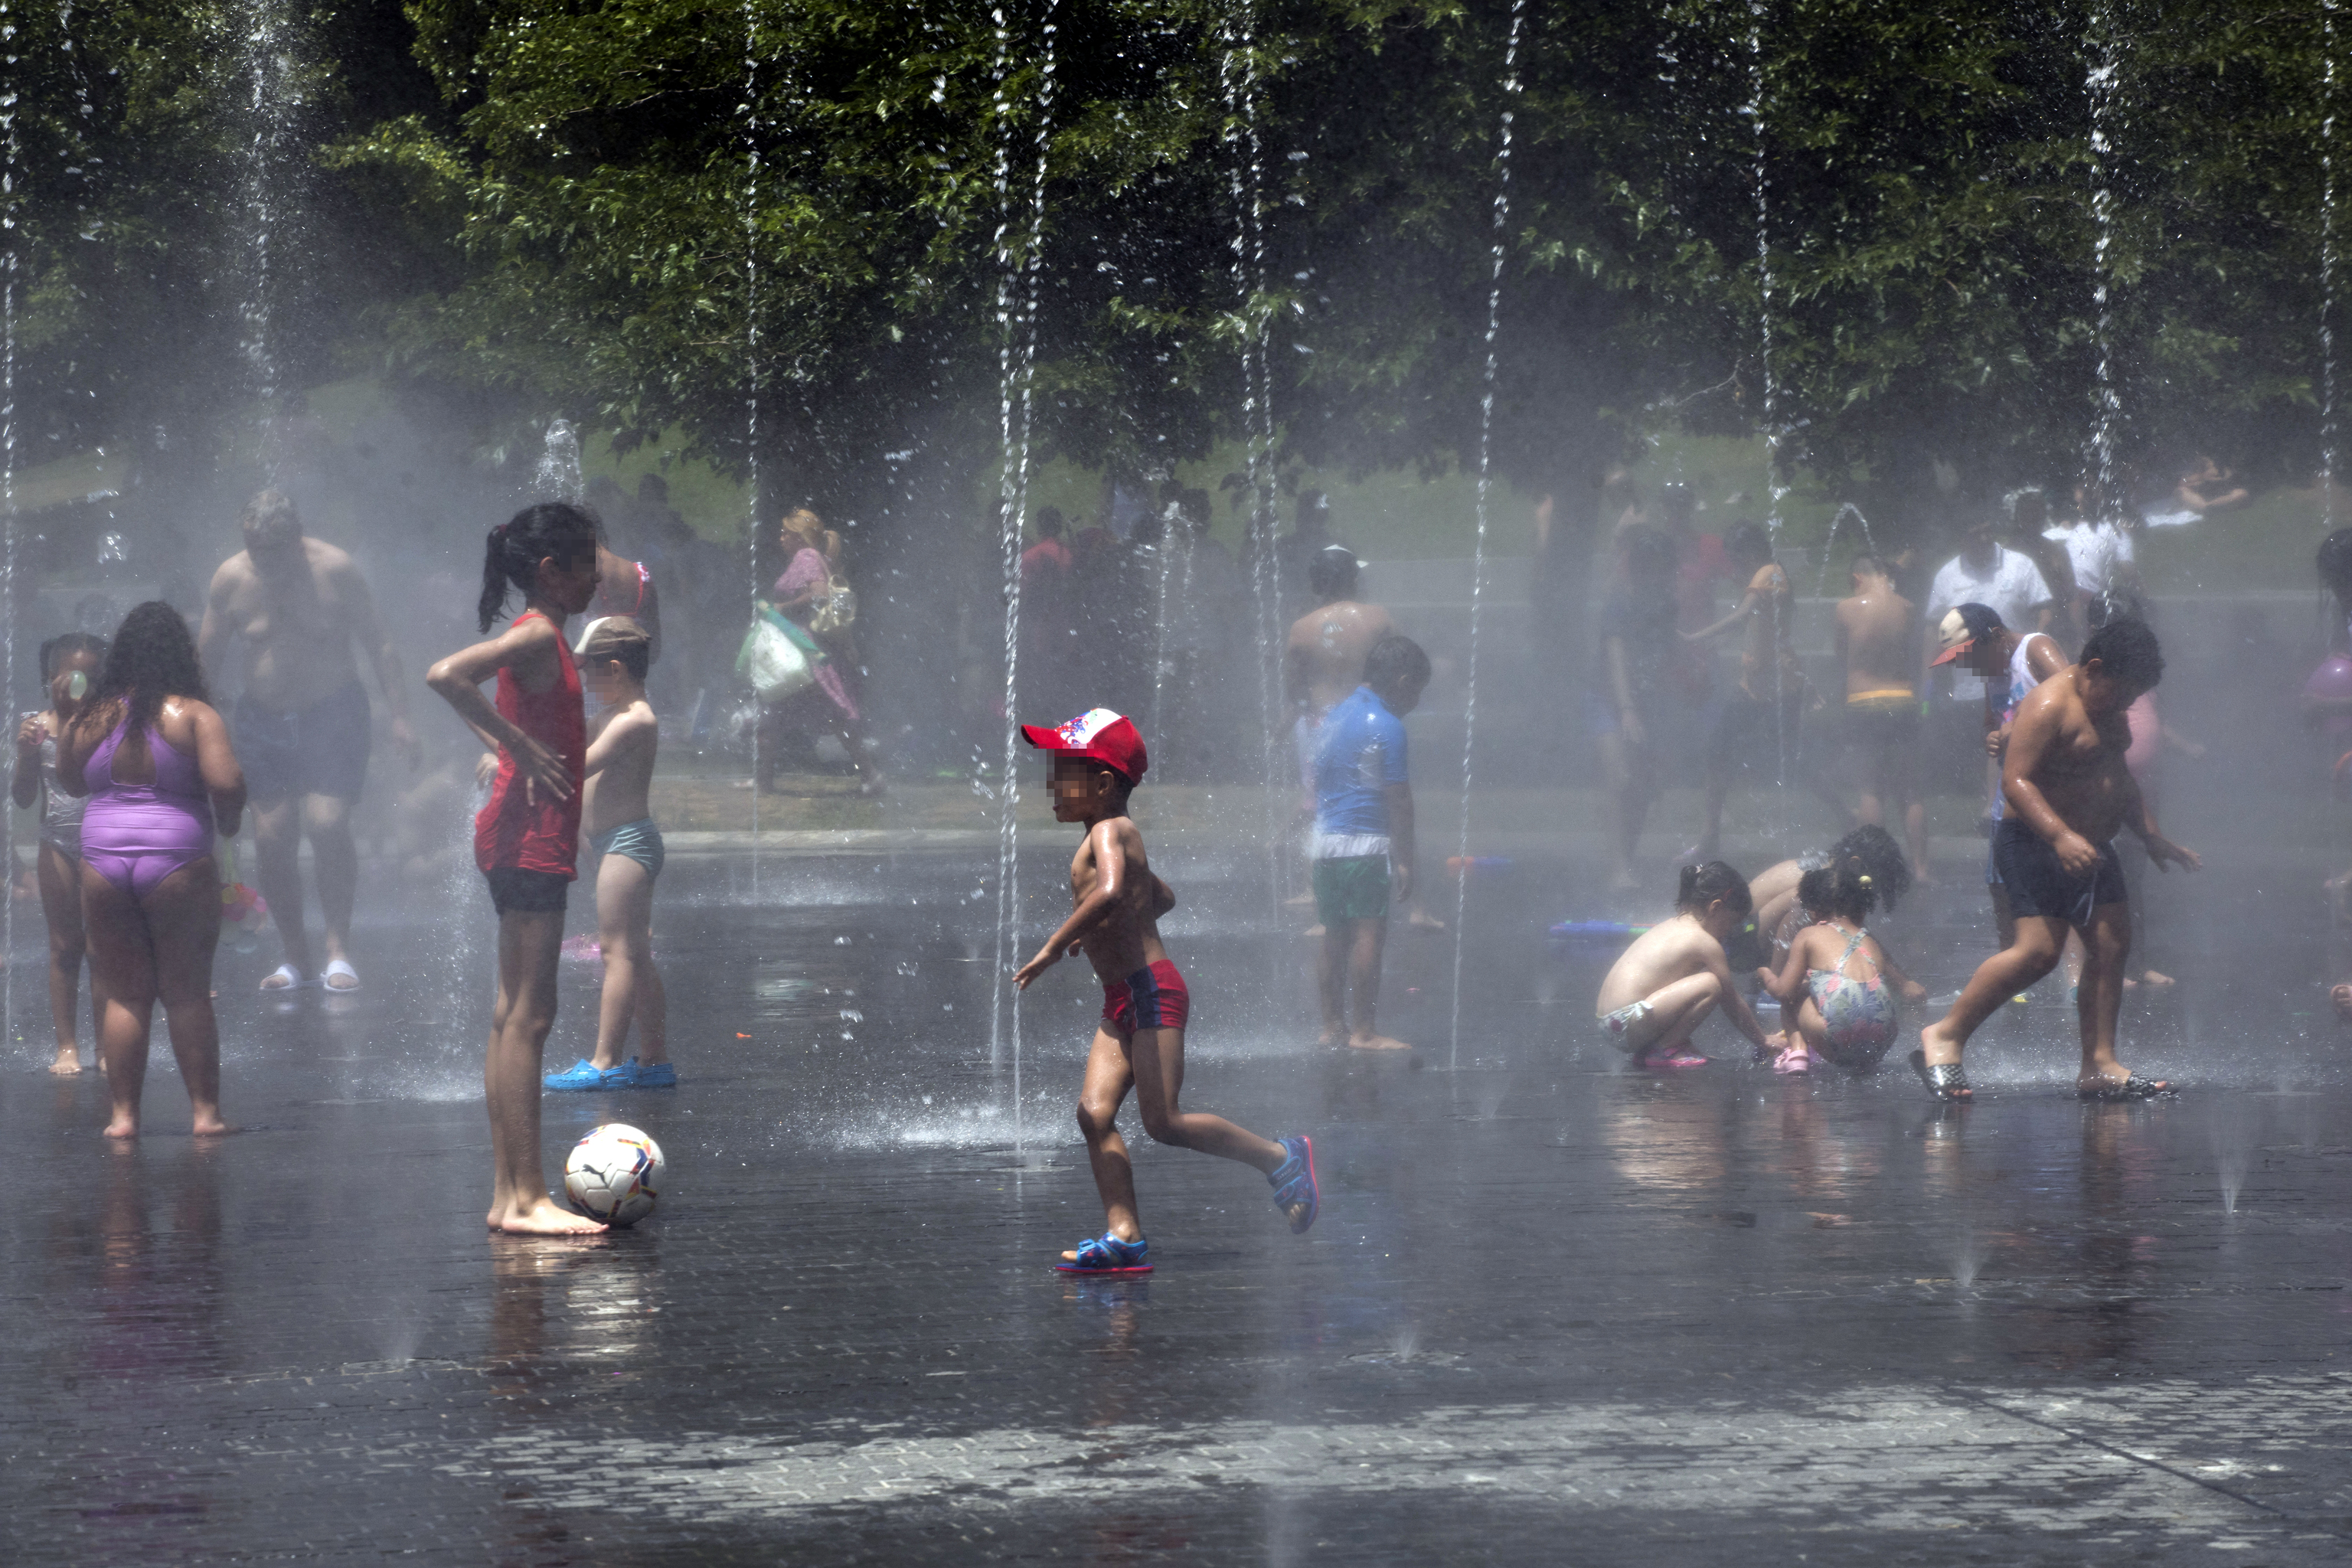 Gente refrescndose entre chorros de agua en el Parque Madrid Ro (Madrid).